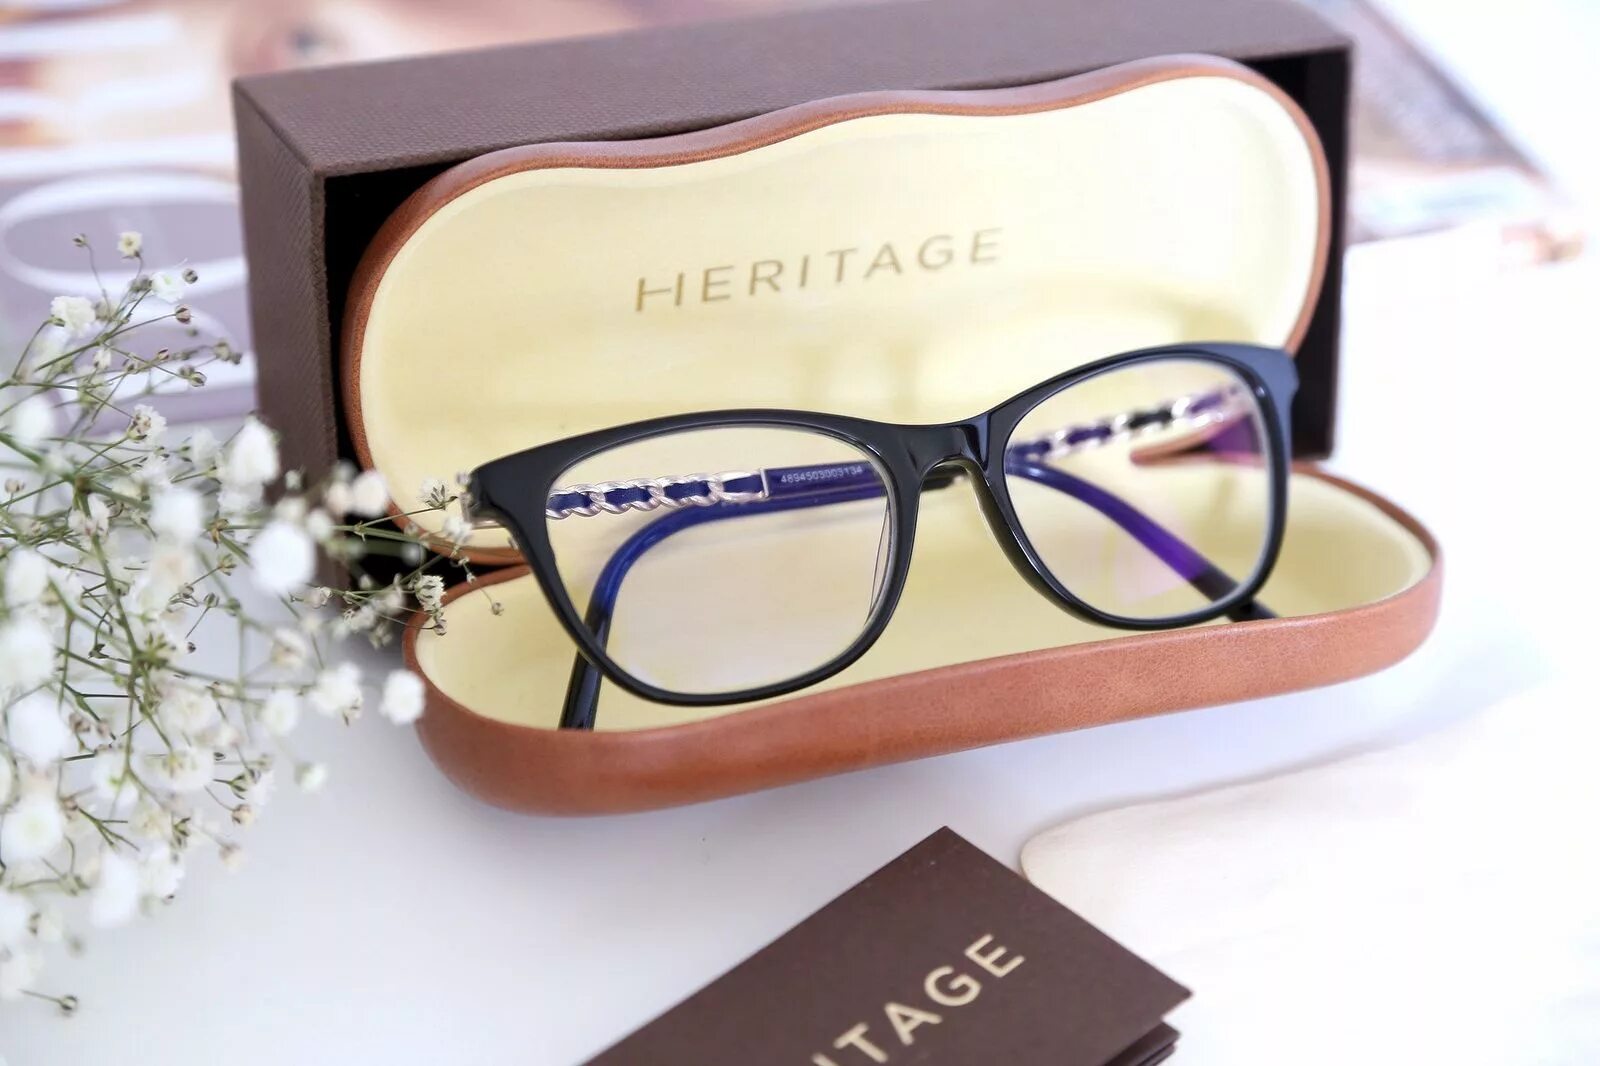 Производители очков рейтинг. Оправа Heritage. Heritage очки. Heritage очки производитель. Heritage оправа для очков.